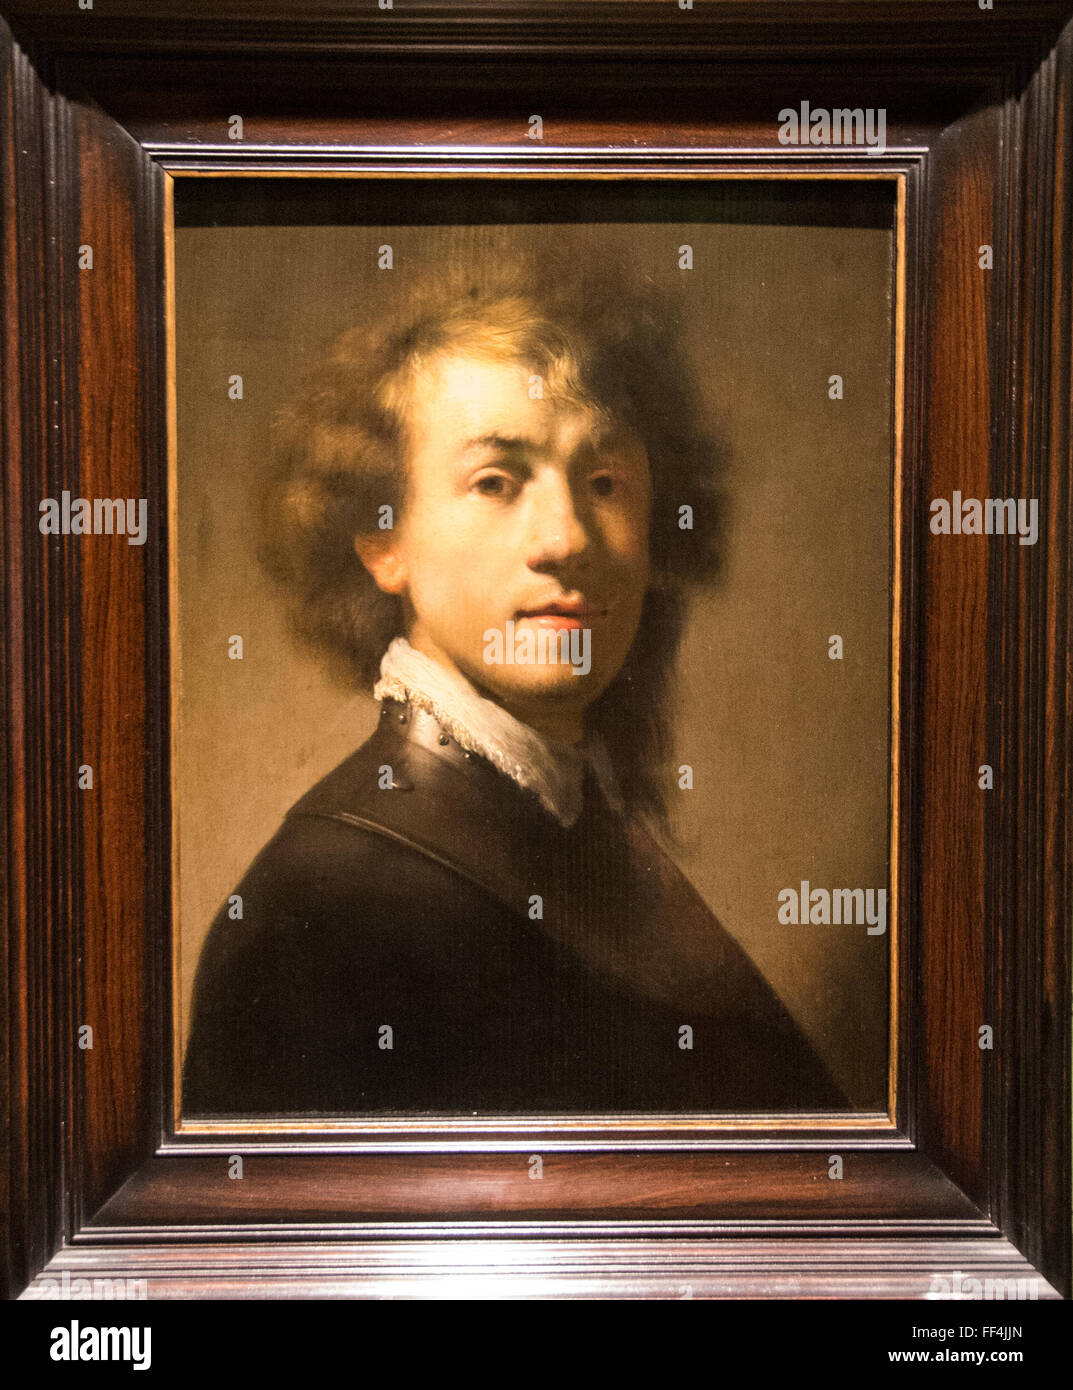 rembrandt van rijn selfportrait in museum mauritshuis in den haag holland Stock Photo